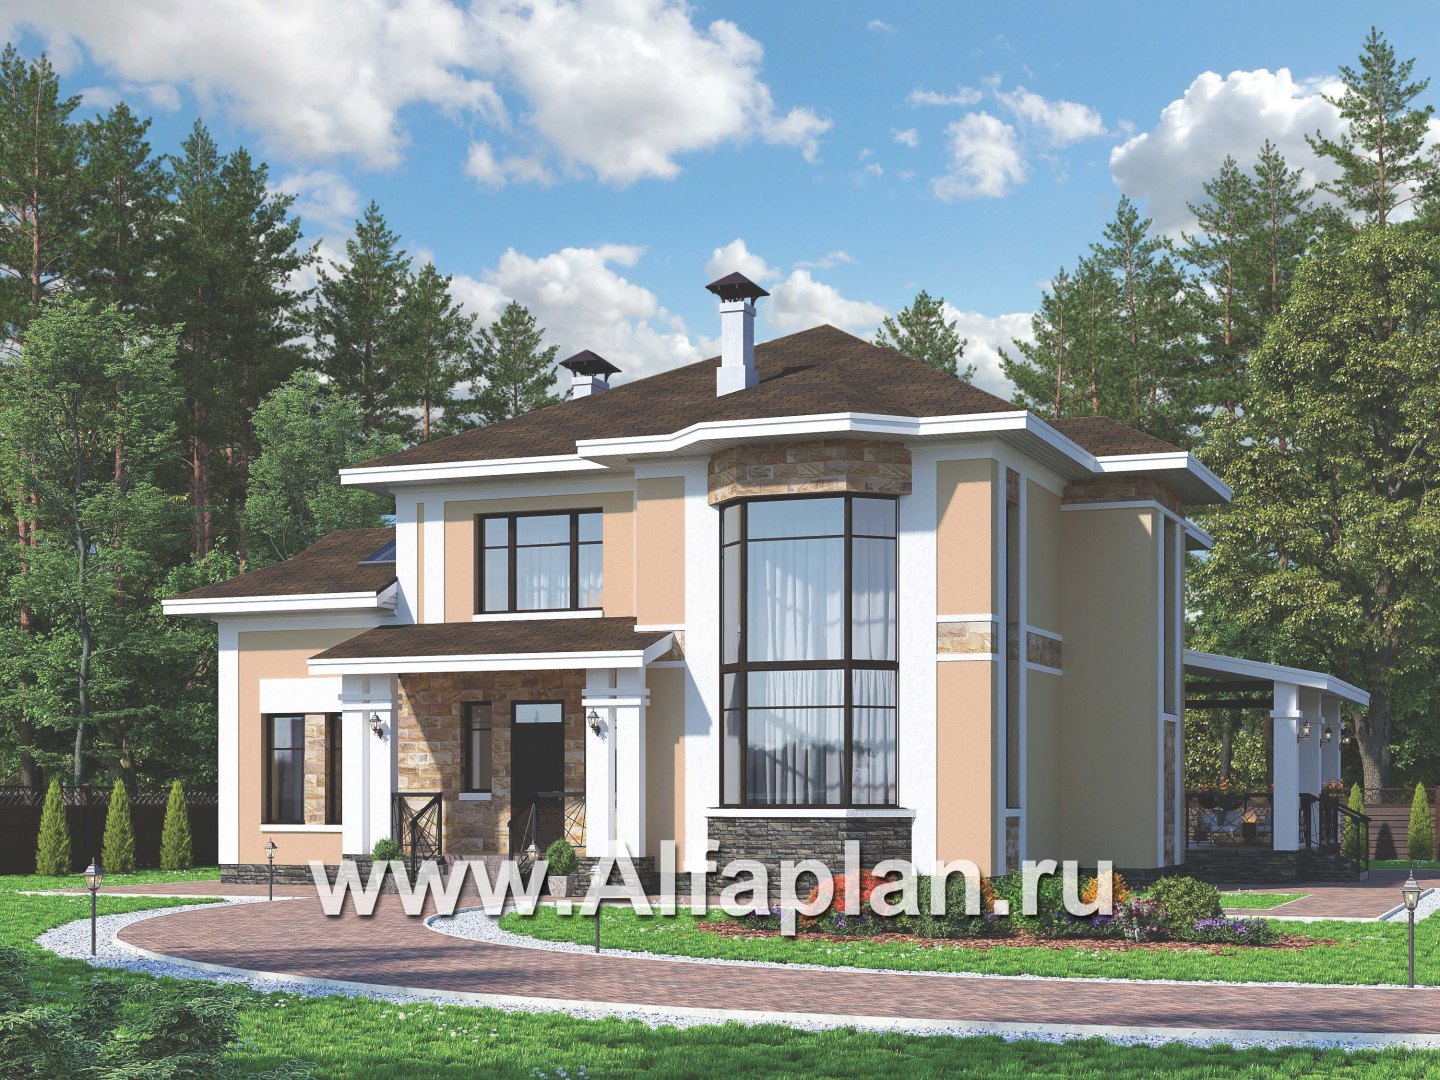 Проекты домов Альфаплан - Особняк с двусветным эркером гостиной - дополнительное изображение №1